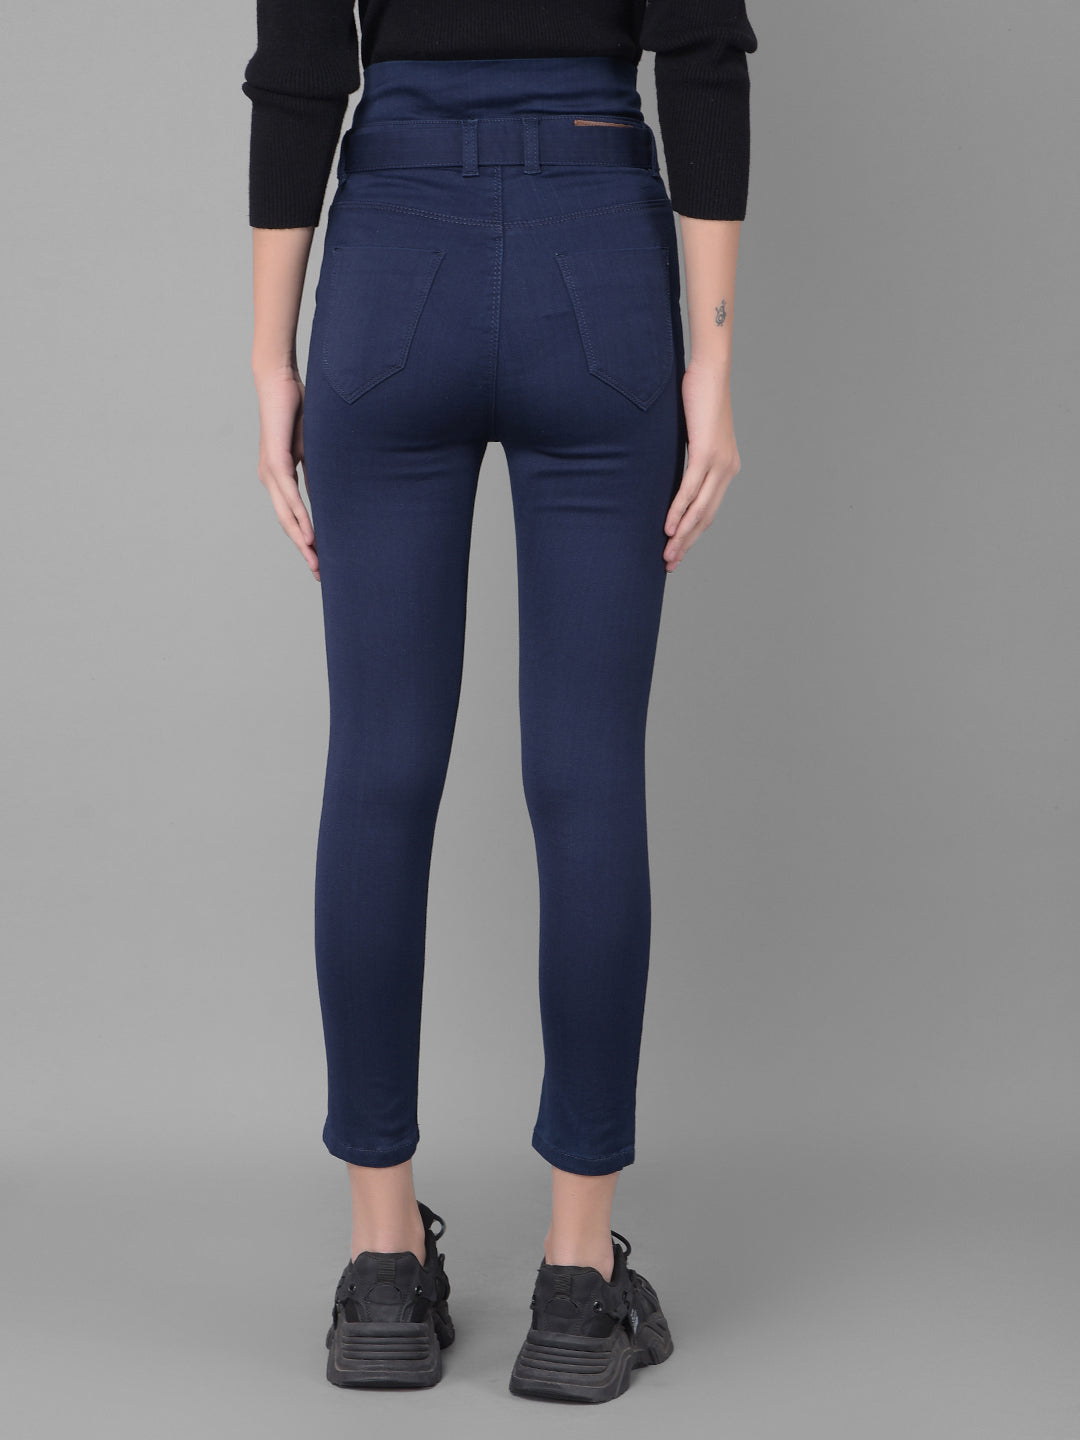 Navy Blue High Waist Jeans With Belt-Women Jeans-Crimsoune Club